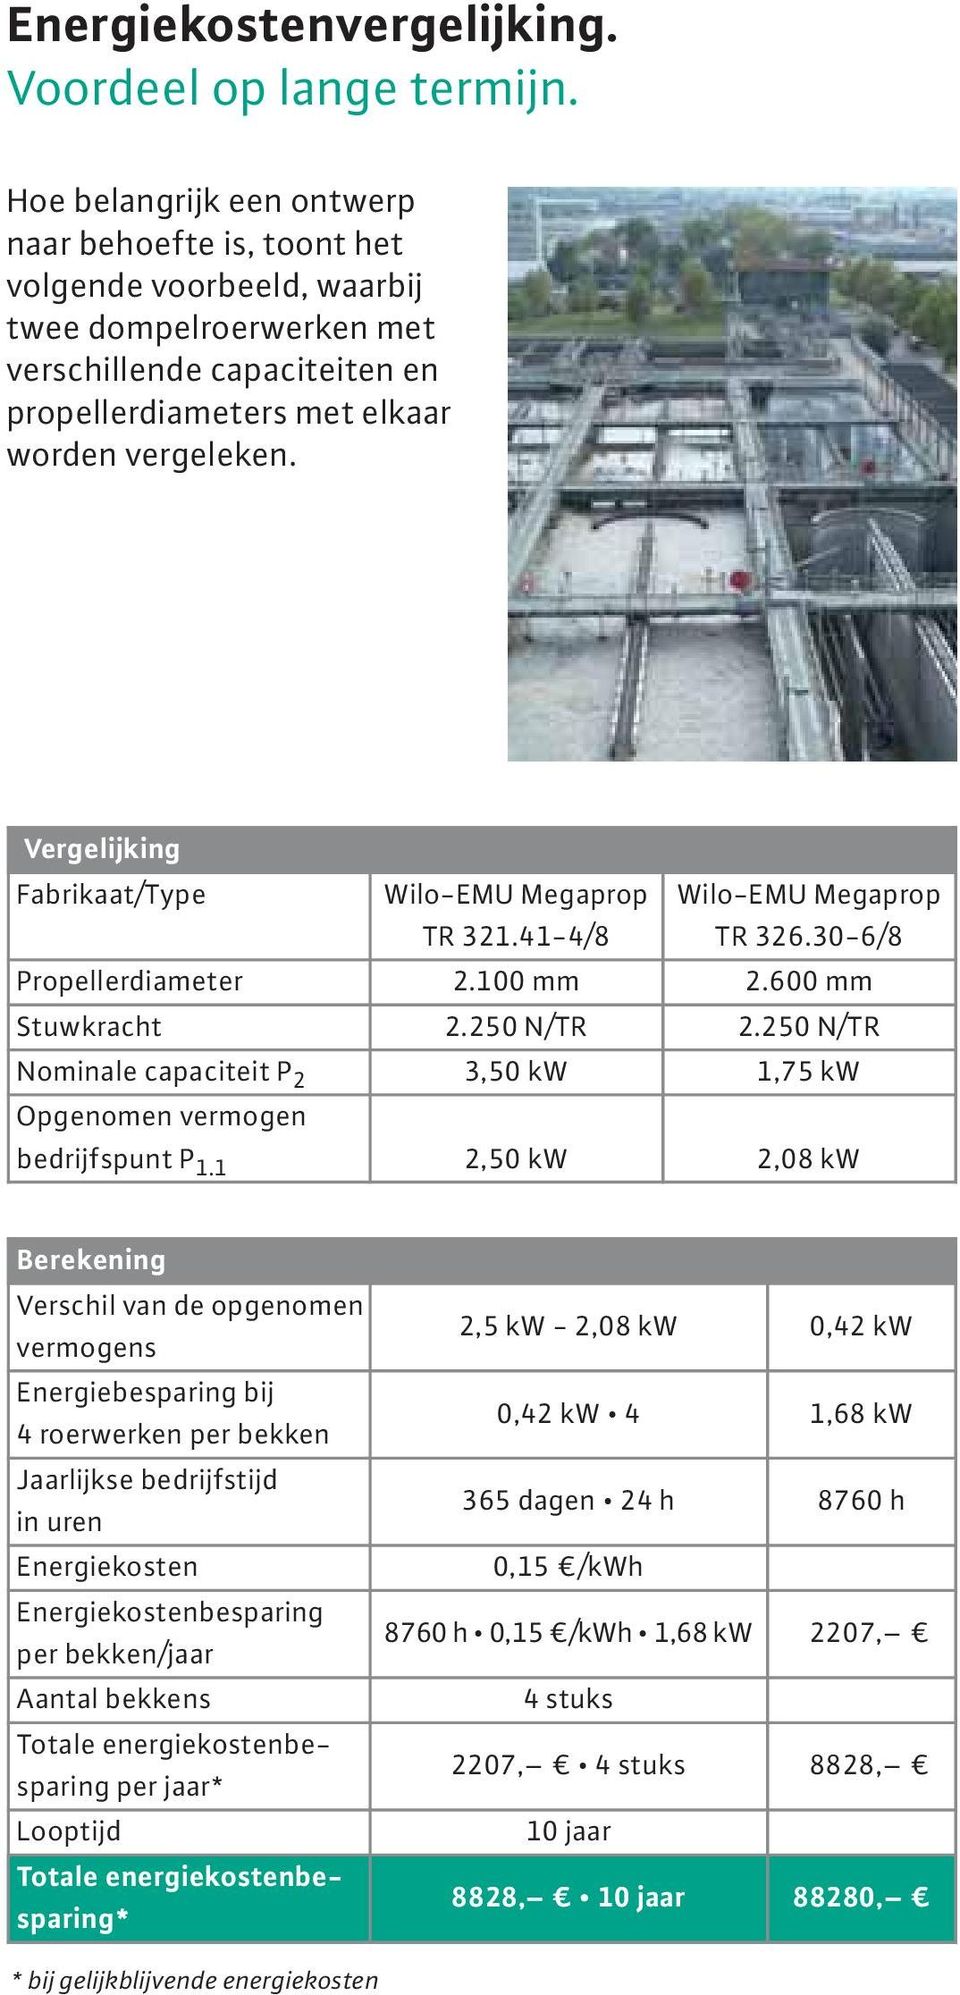 Vergelijking Fabrikaat/Type Wilo-EMU Megaprop TR 321.41-4/8 Wilo-EMU Megaprop TR 326.30-6/8 Propellerdiameter 2.100 mm 2.600 mm Stuwkracht 2.250 N/TR 2.